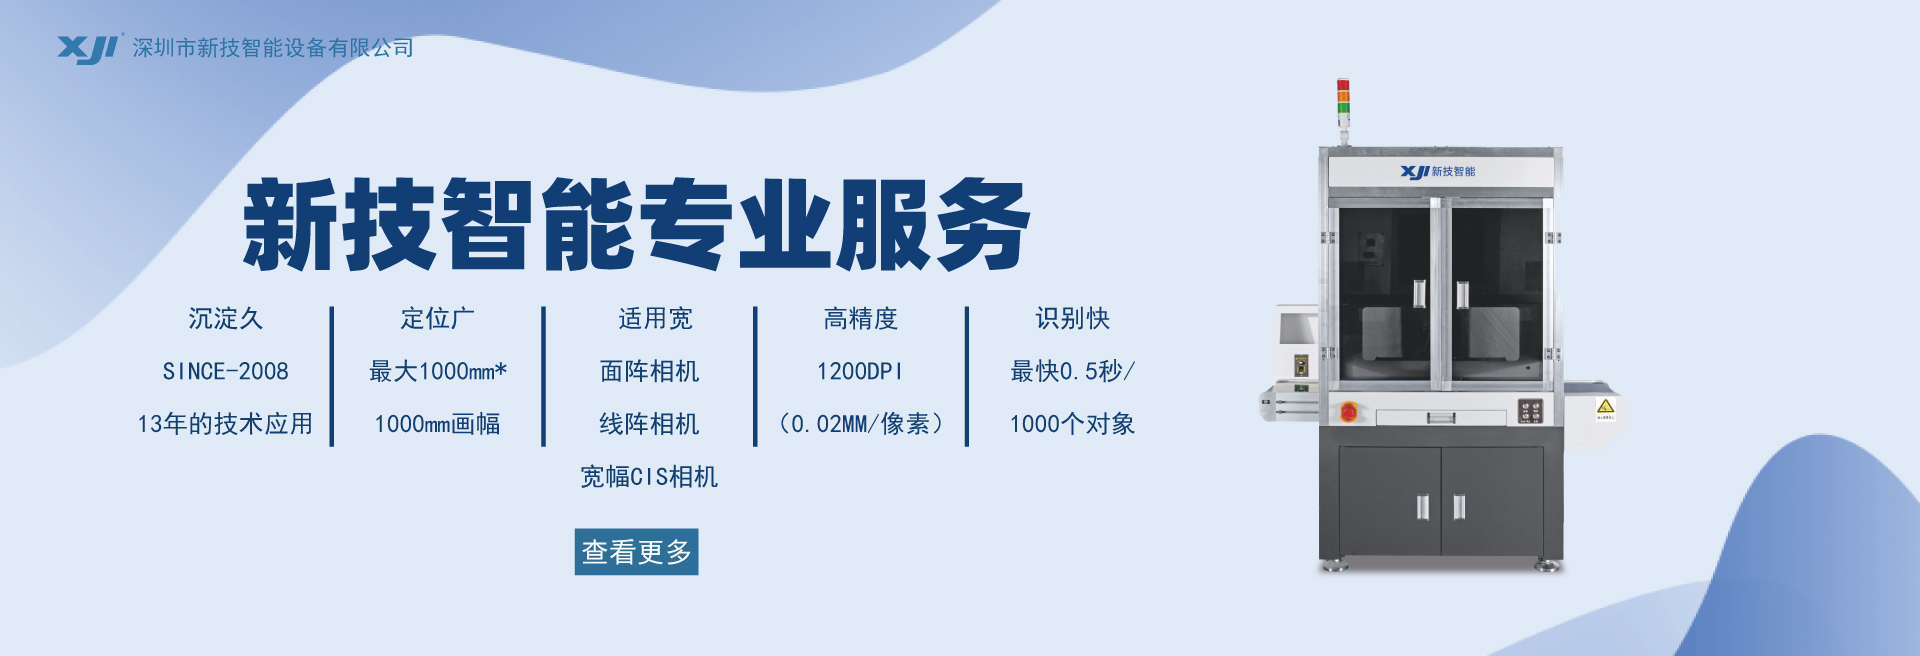 深圳市新技智能設備有限公司